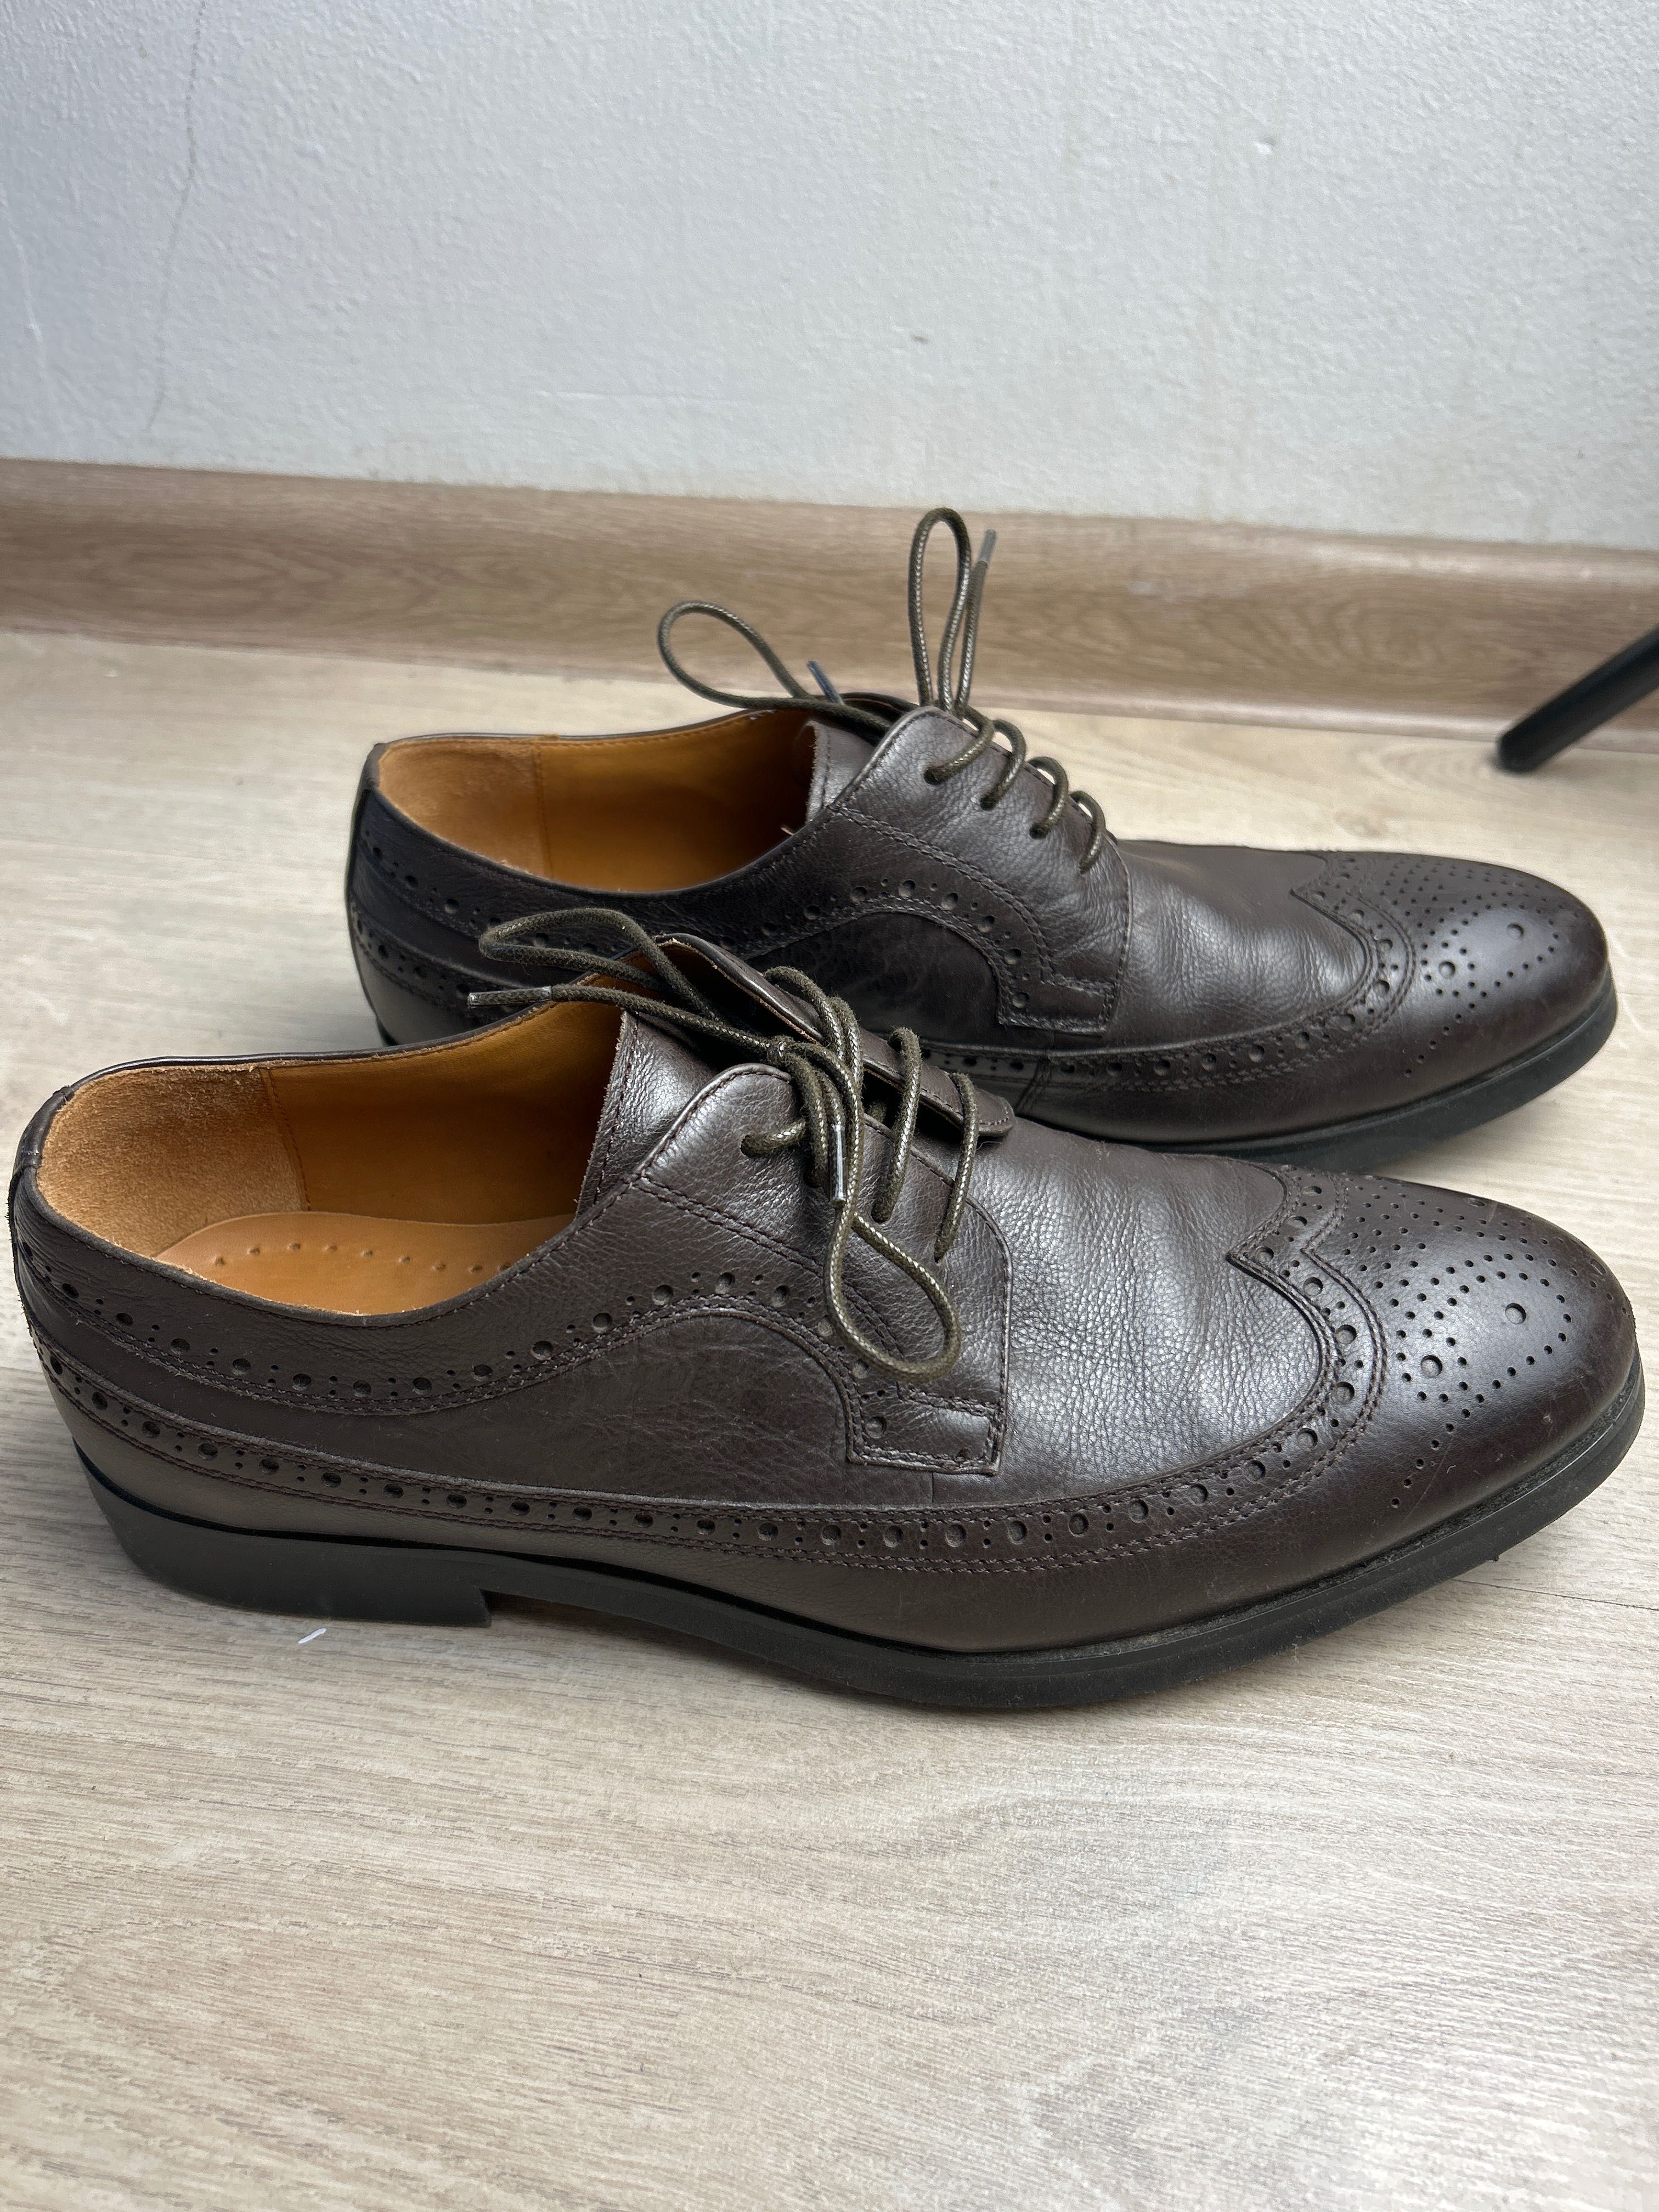 Туфли мужские, кожанные цвет темно-коричневый